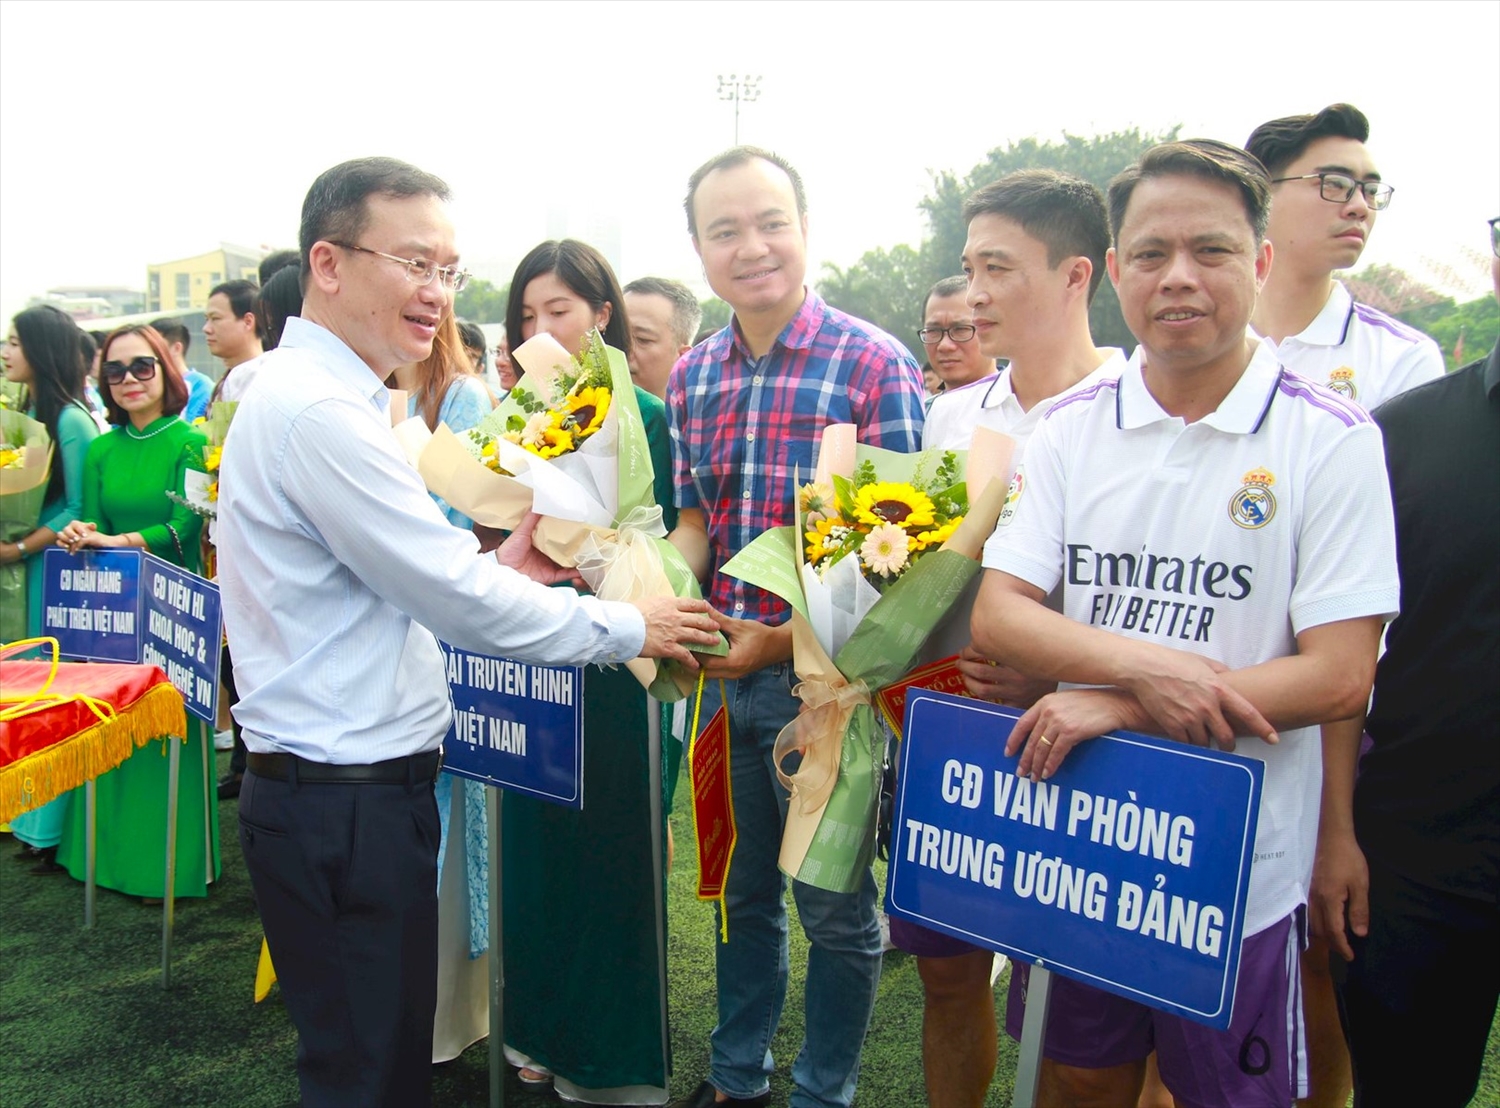 Ông Nguyễn Hồng Minh, Phó Cục trưởng Cục Thể dục Thể thao (Bộ Văn hóa, Thể thao và Du lịch) tặng hoa và cờ lưu niệm cho đại diện các đội bóng tham dự giải.